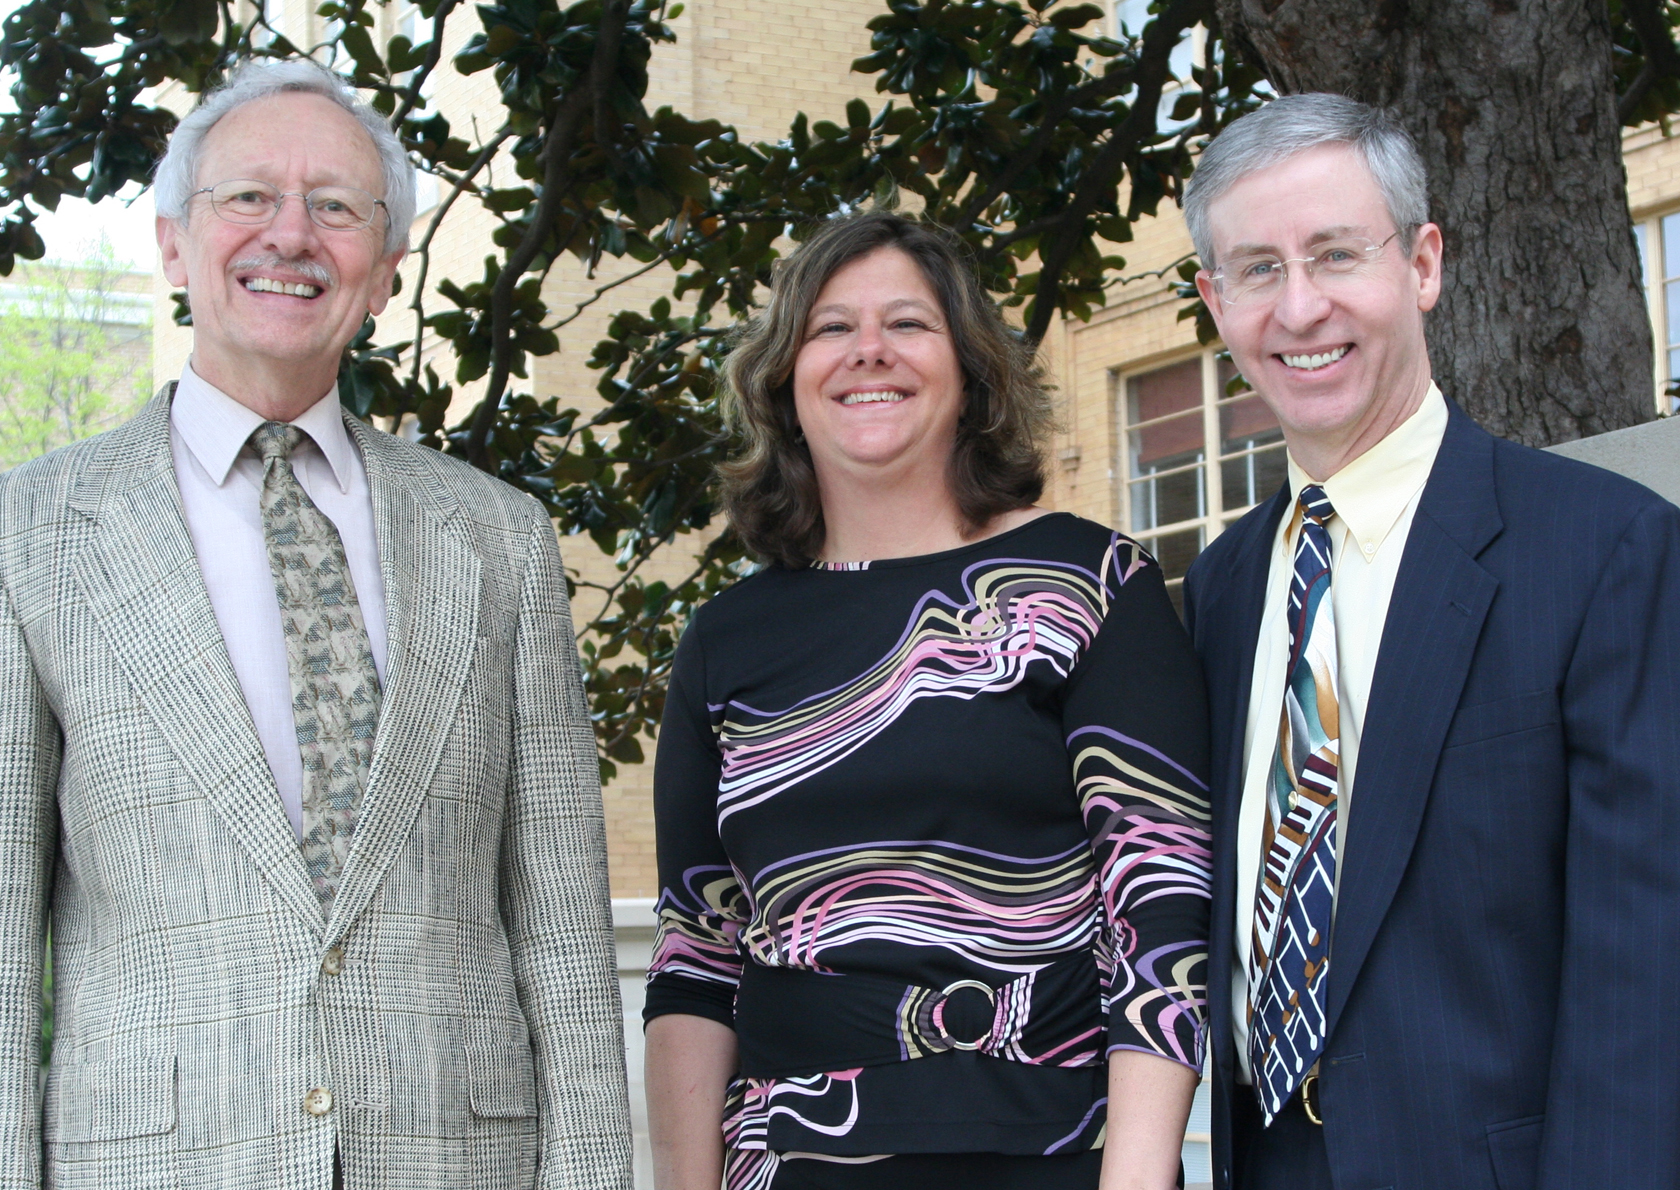 Dr. Dan Hanson, Dr. Brenda Brown, and Dr. John Miller posing.